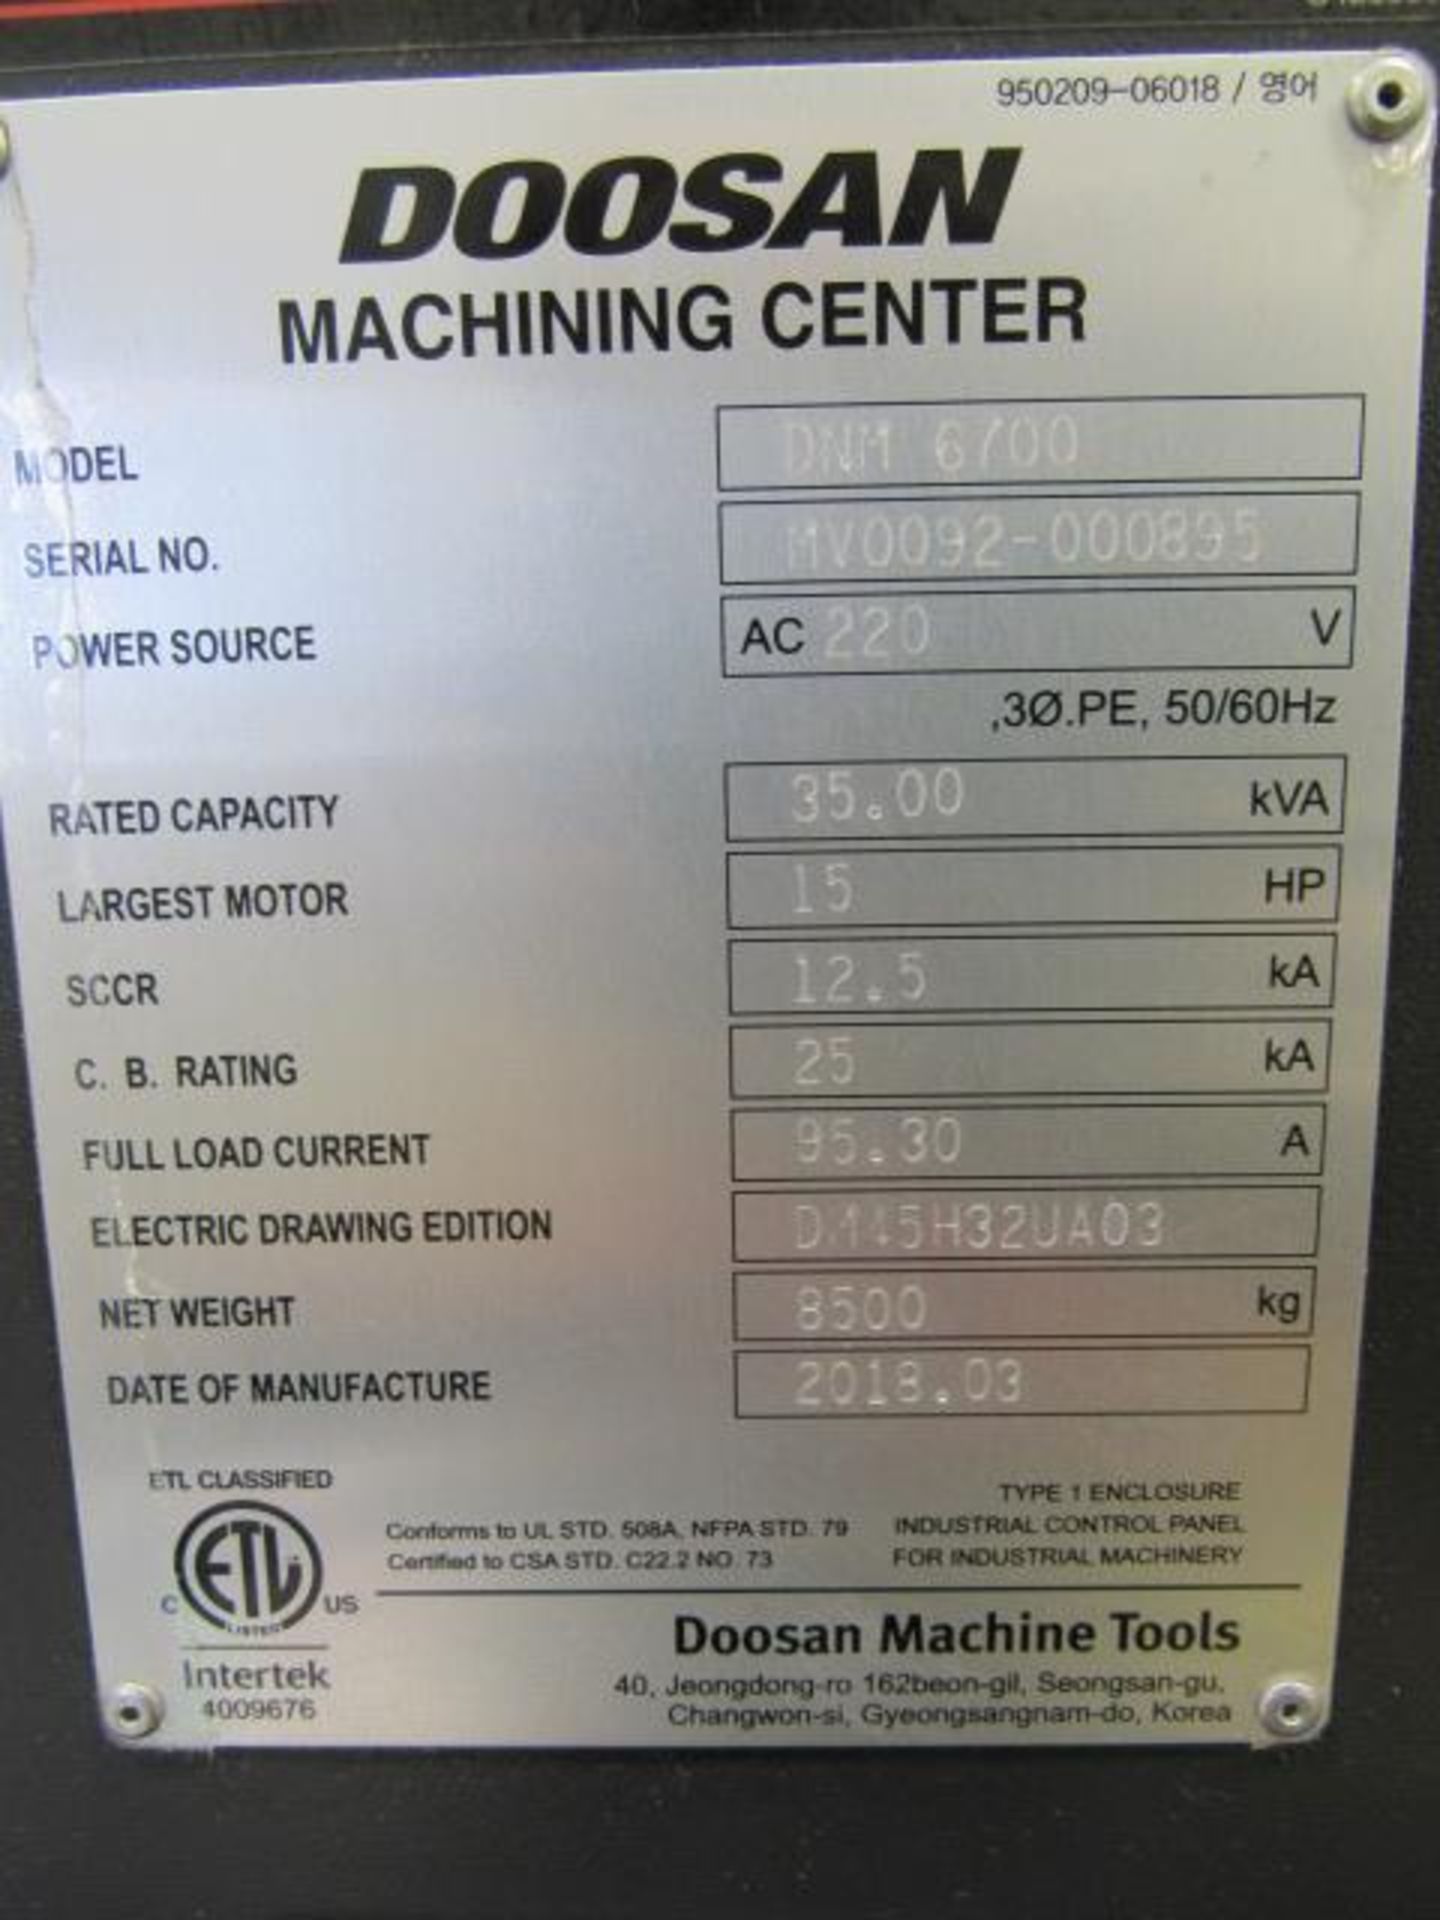 Doosan DNM 6700 CNC Vertical Machining Center with 59.1'' x 26.4'' Table, Big Plus #40, Spindle - Bild 8 aus 9